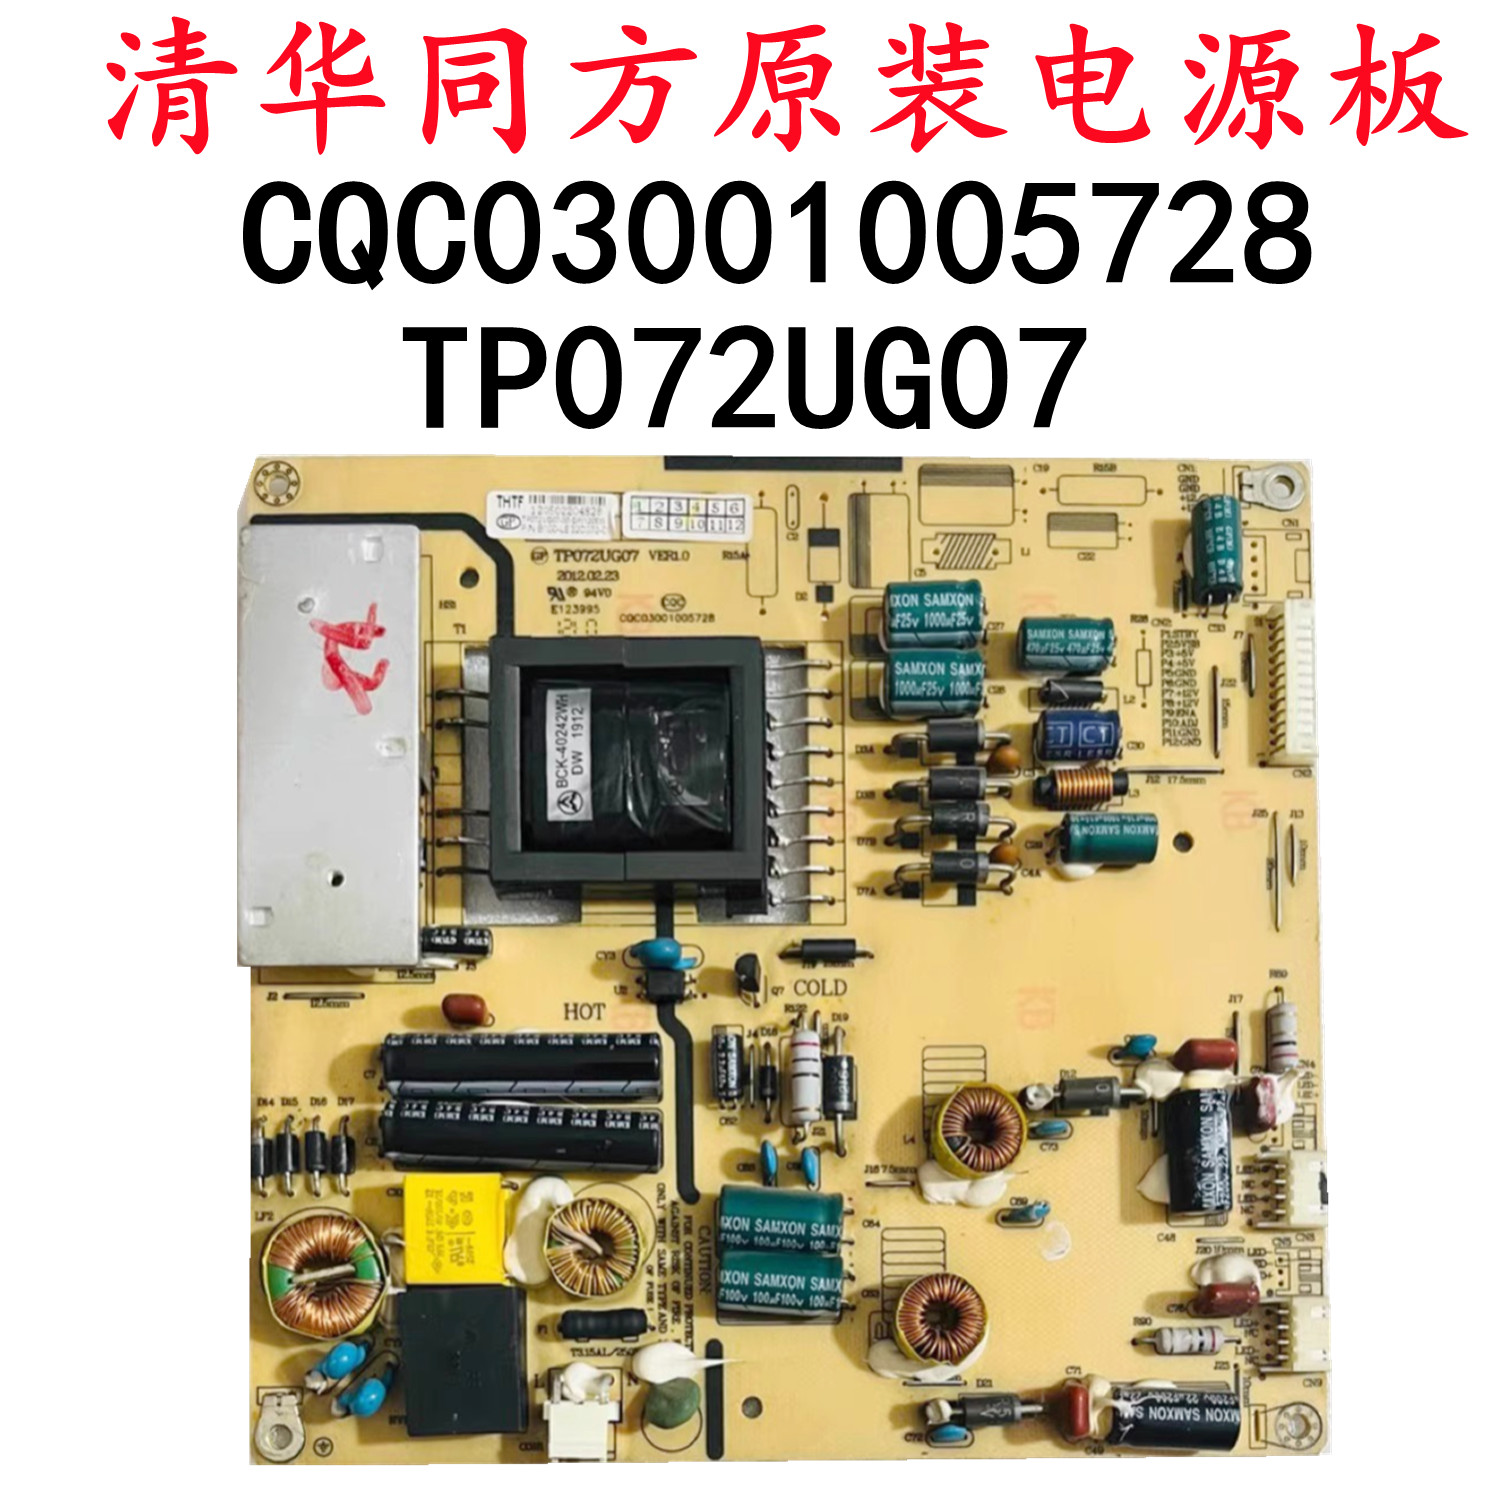 清华同方-LE32TM1000 液晶电视电源板TP072UG07 CQC03001005728 - 图1